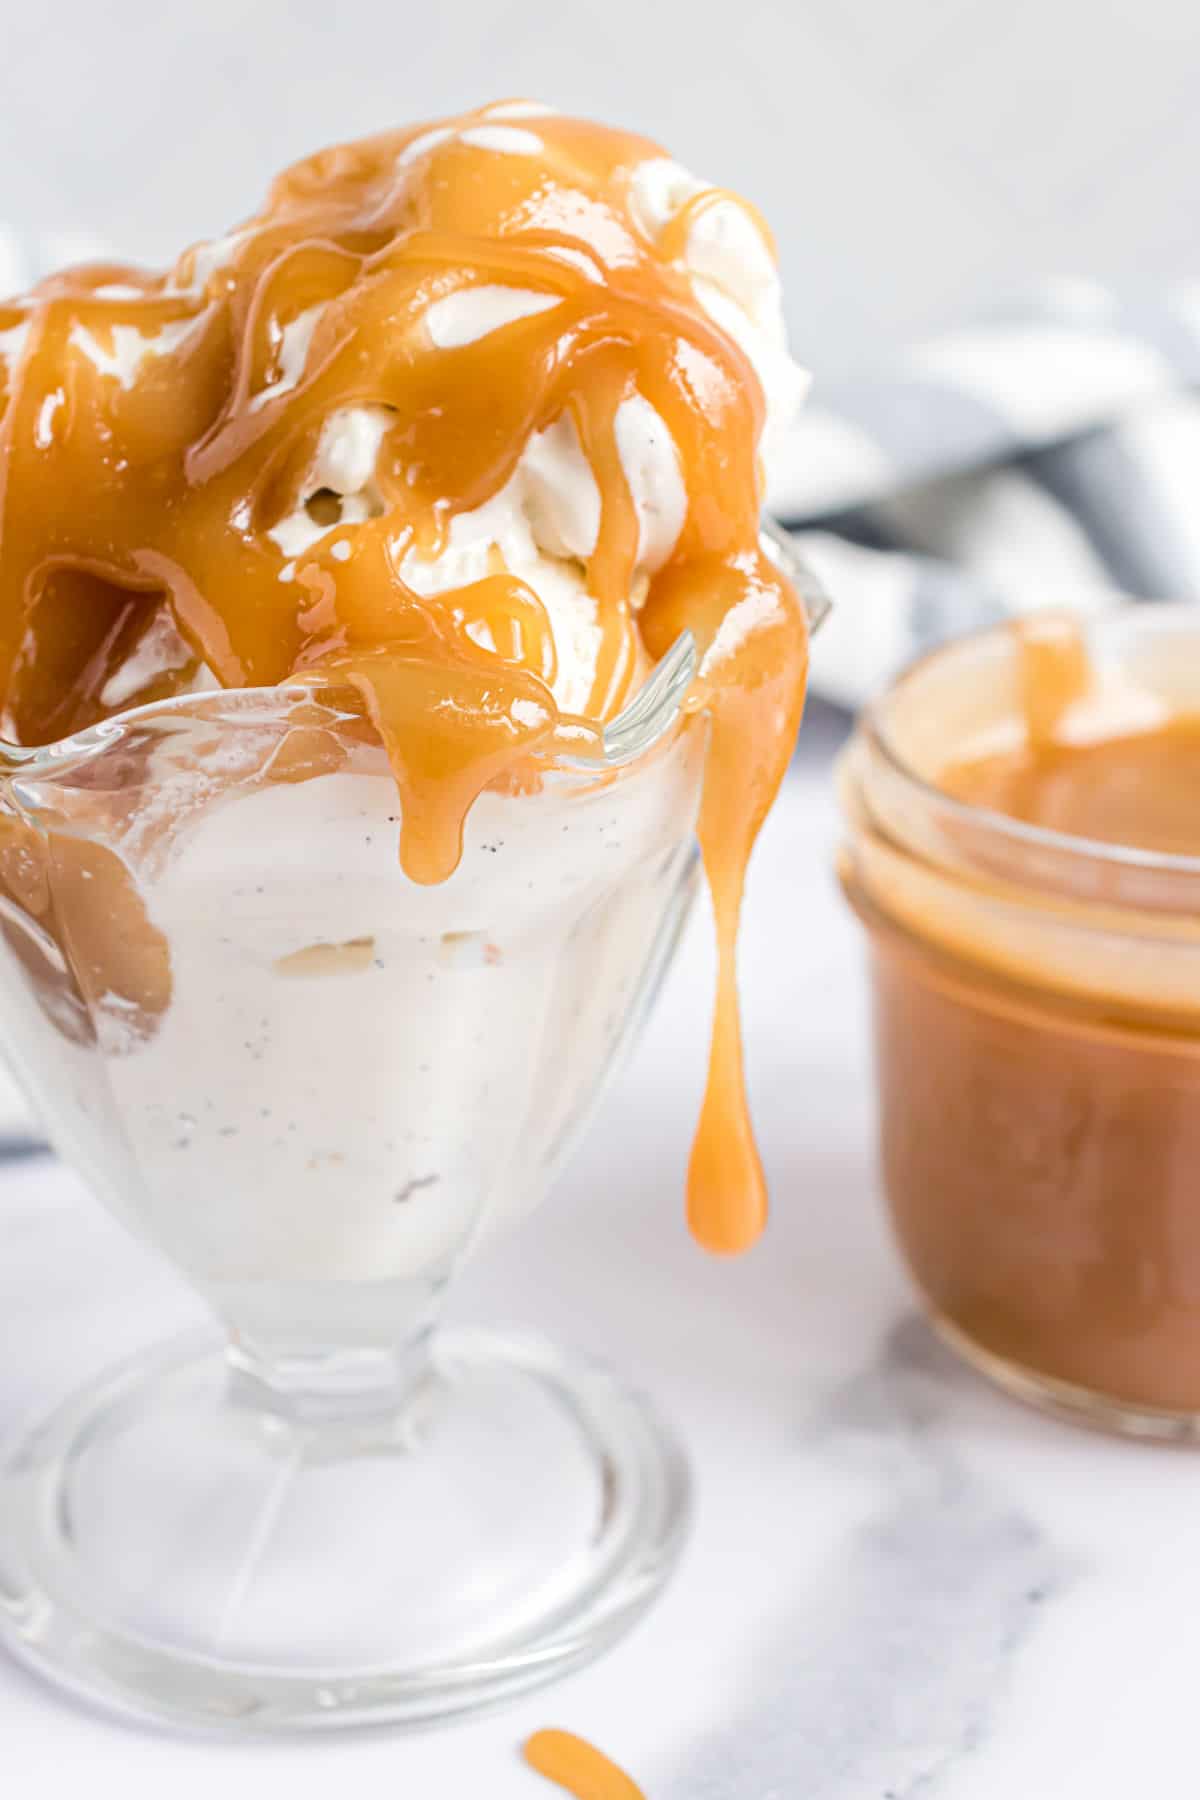 Butterscotch sauce dripping off an ice cream sundae.